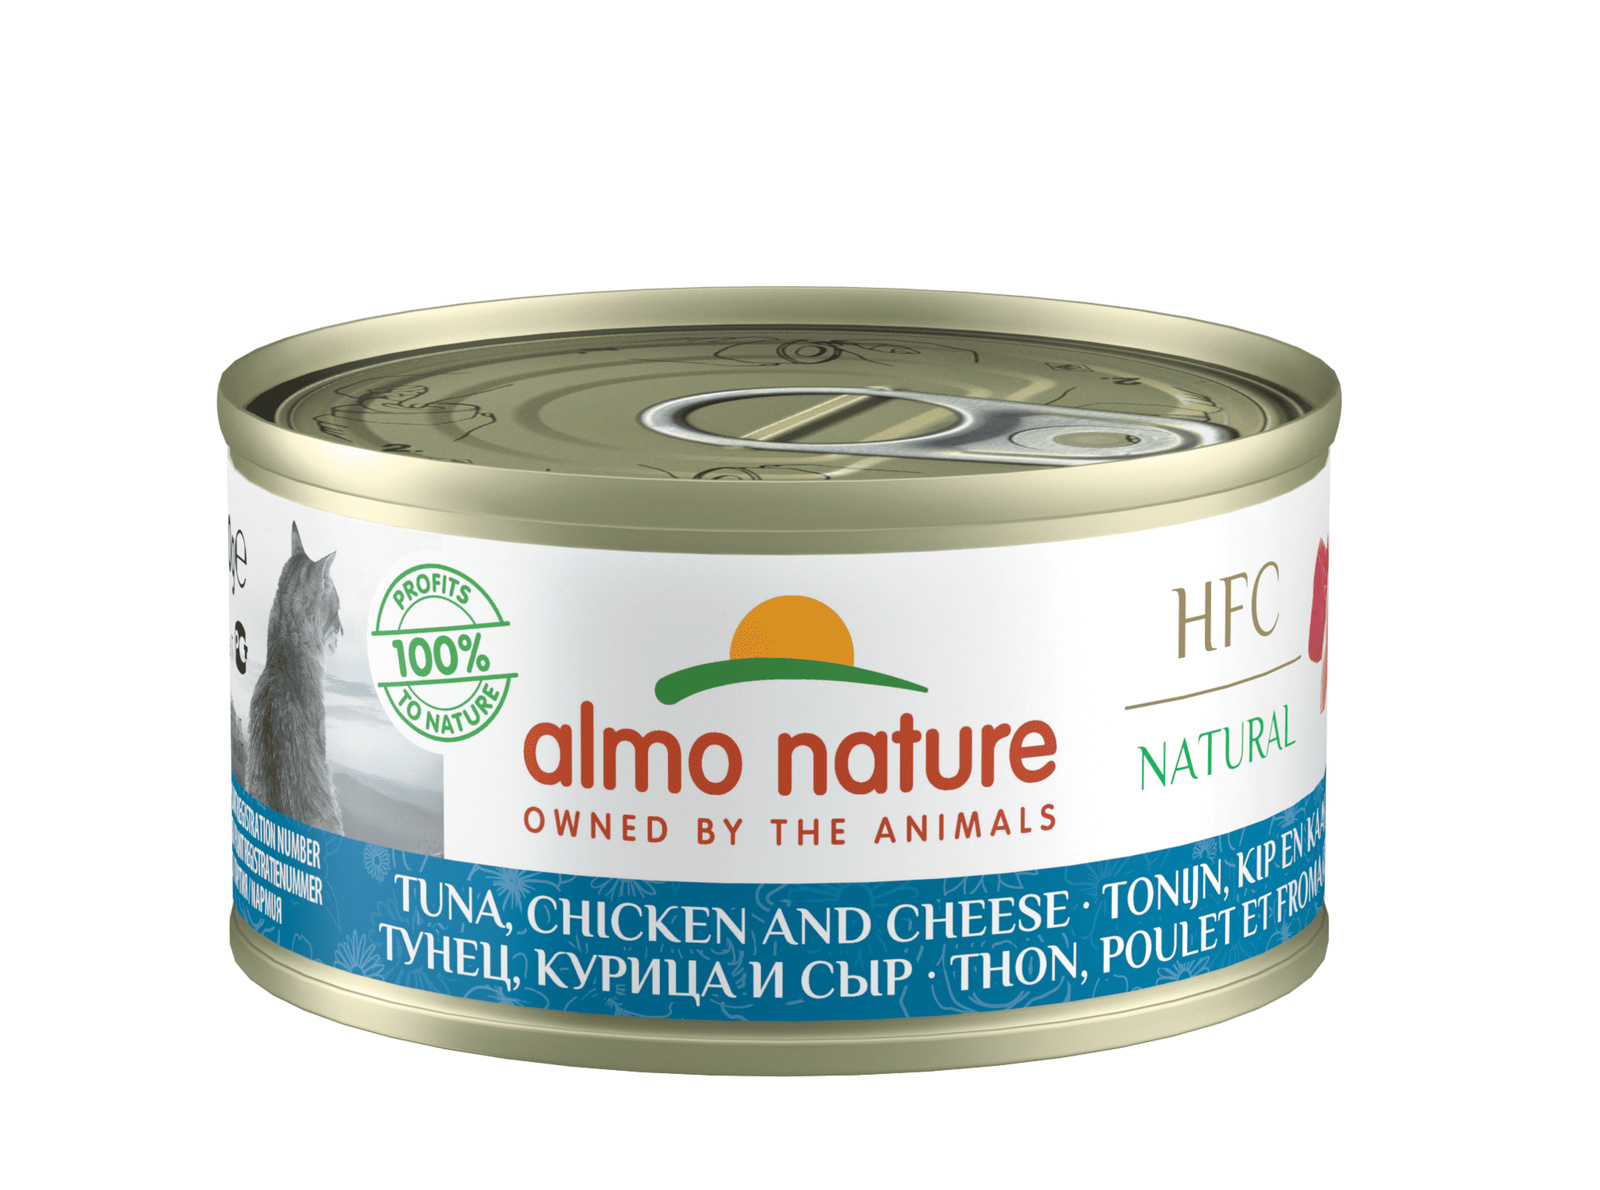 Almo Nature консервы Almo Nature консервы для кошек с тунцом, курицей и сыром, 75% мяса (1,68 кг) консервы для кошек almo nature legend с курицей и сыром 75% 70 г